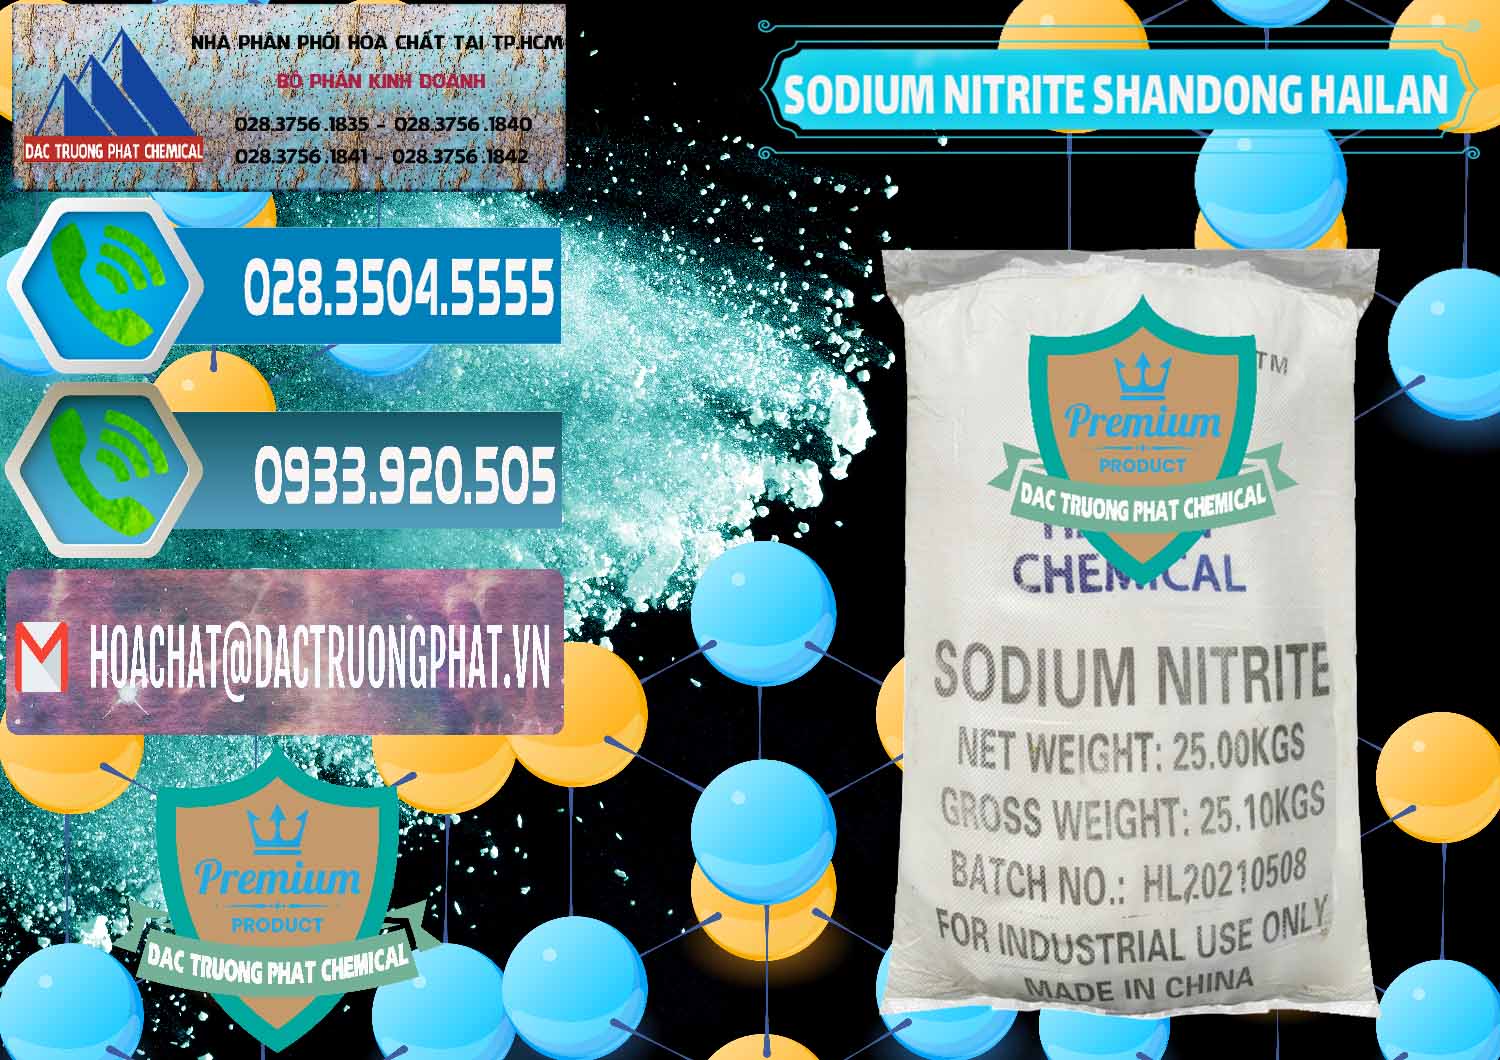 Chuyên bán và phân phối Sodium Nitrite - NANO2 99.3% Shandong Hailan Trung Quốc China - 0284 - Nhà cung cấp - phân phối hóa chất tại TP.HCM - congtyhoachat.net